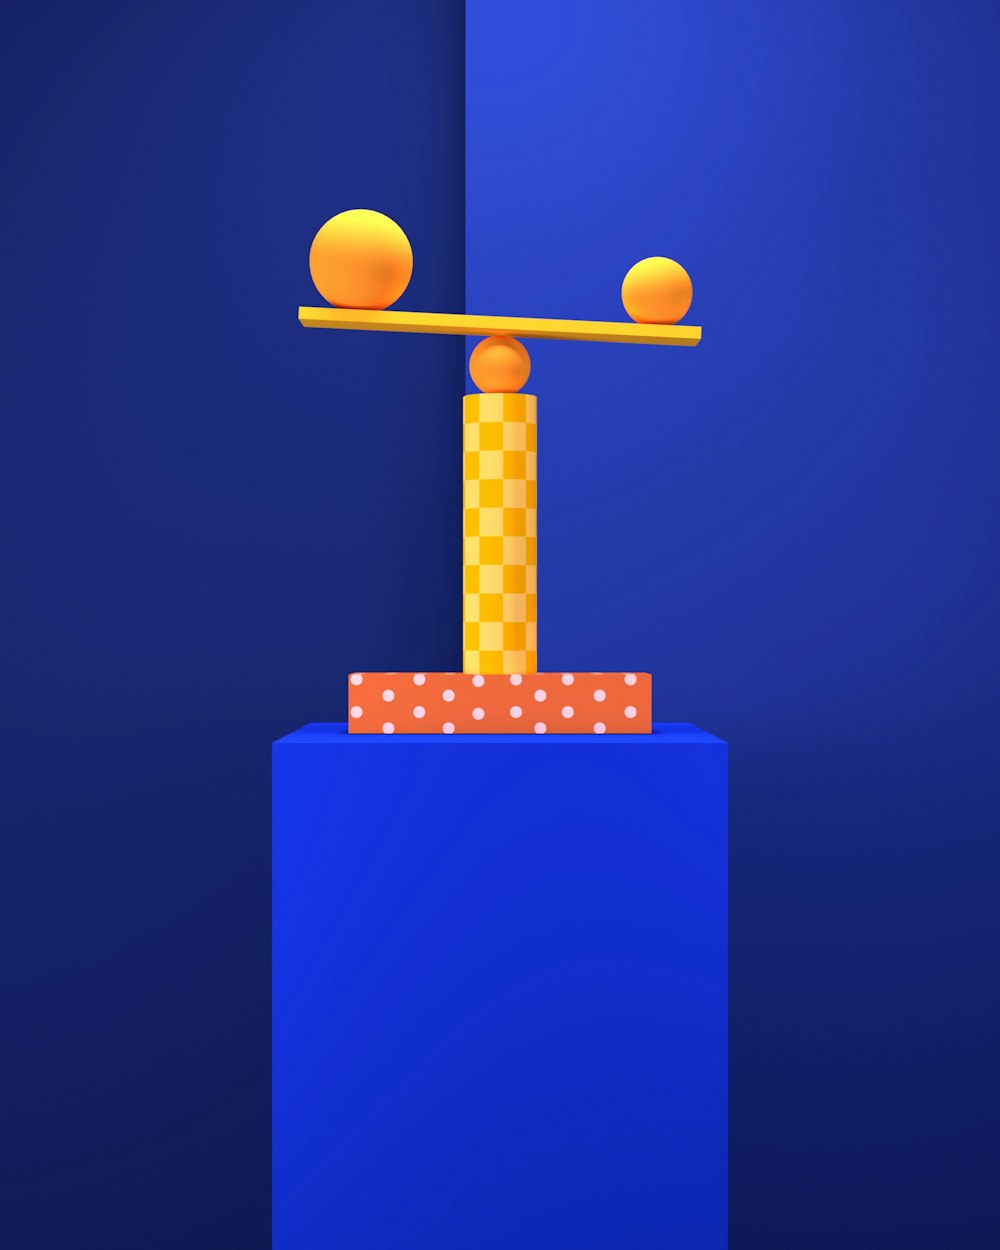 uma imagem gerada por computador de um feixe de equilíbrio com bolas sobre ele